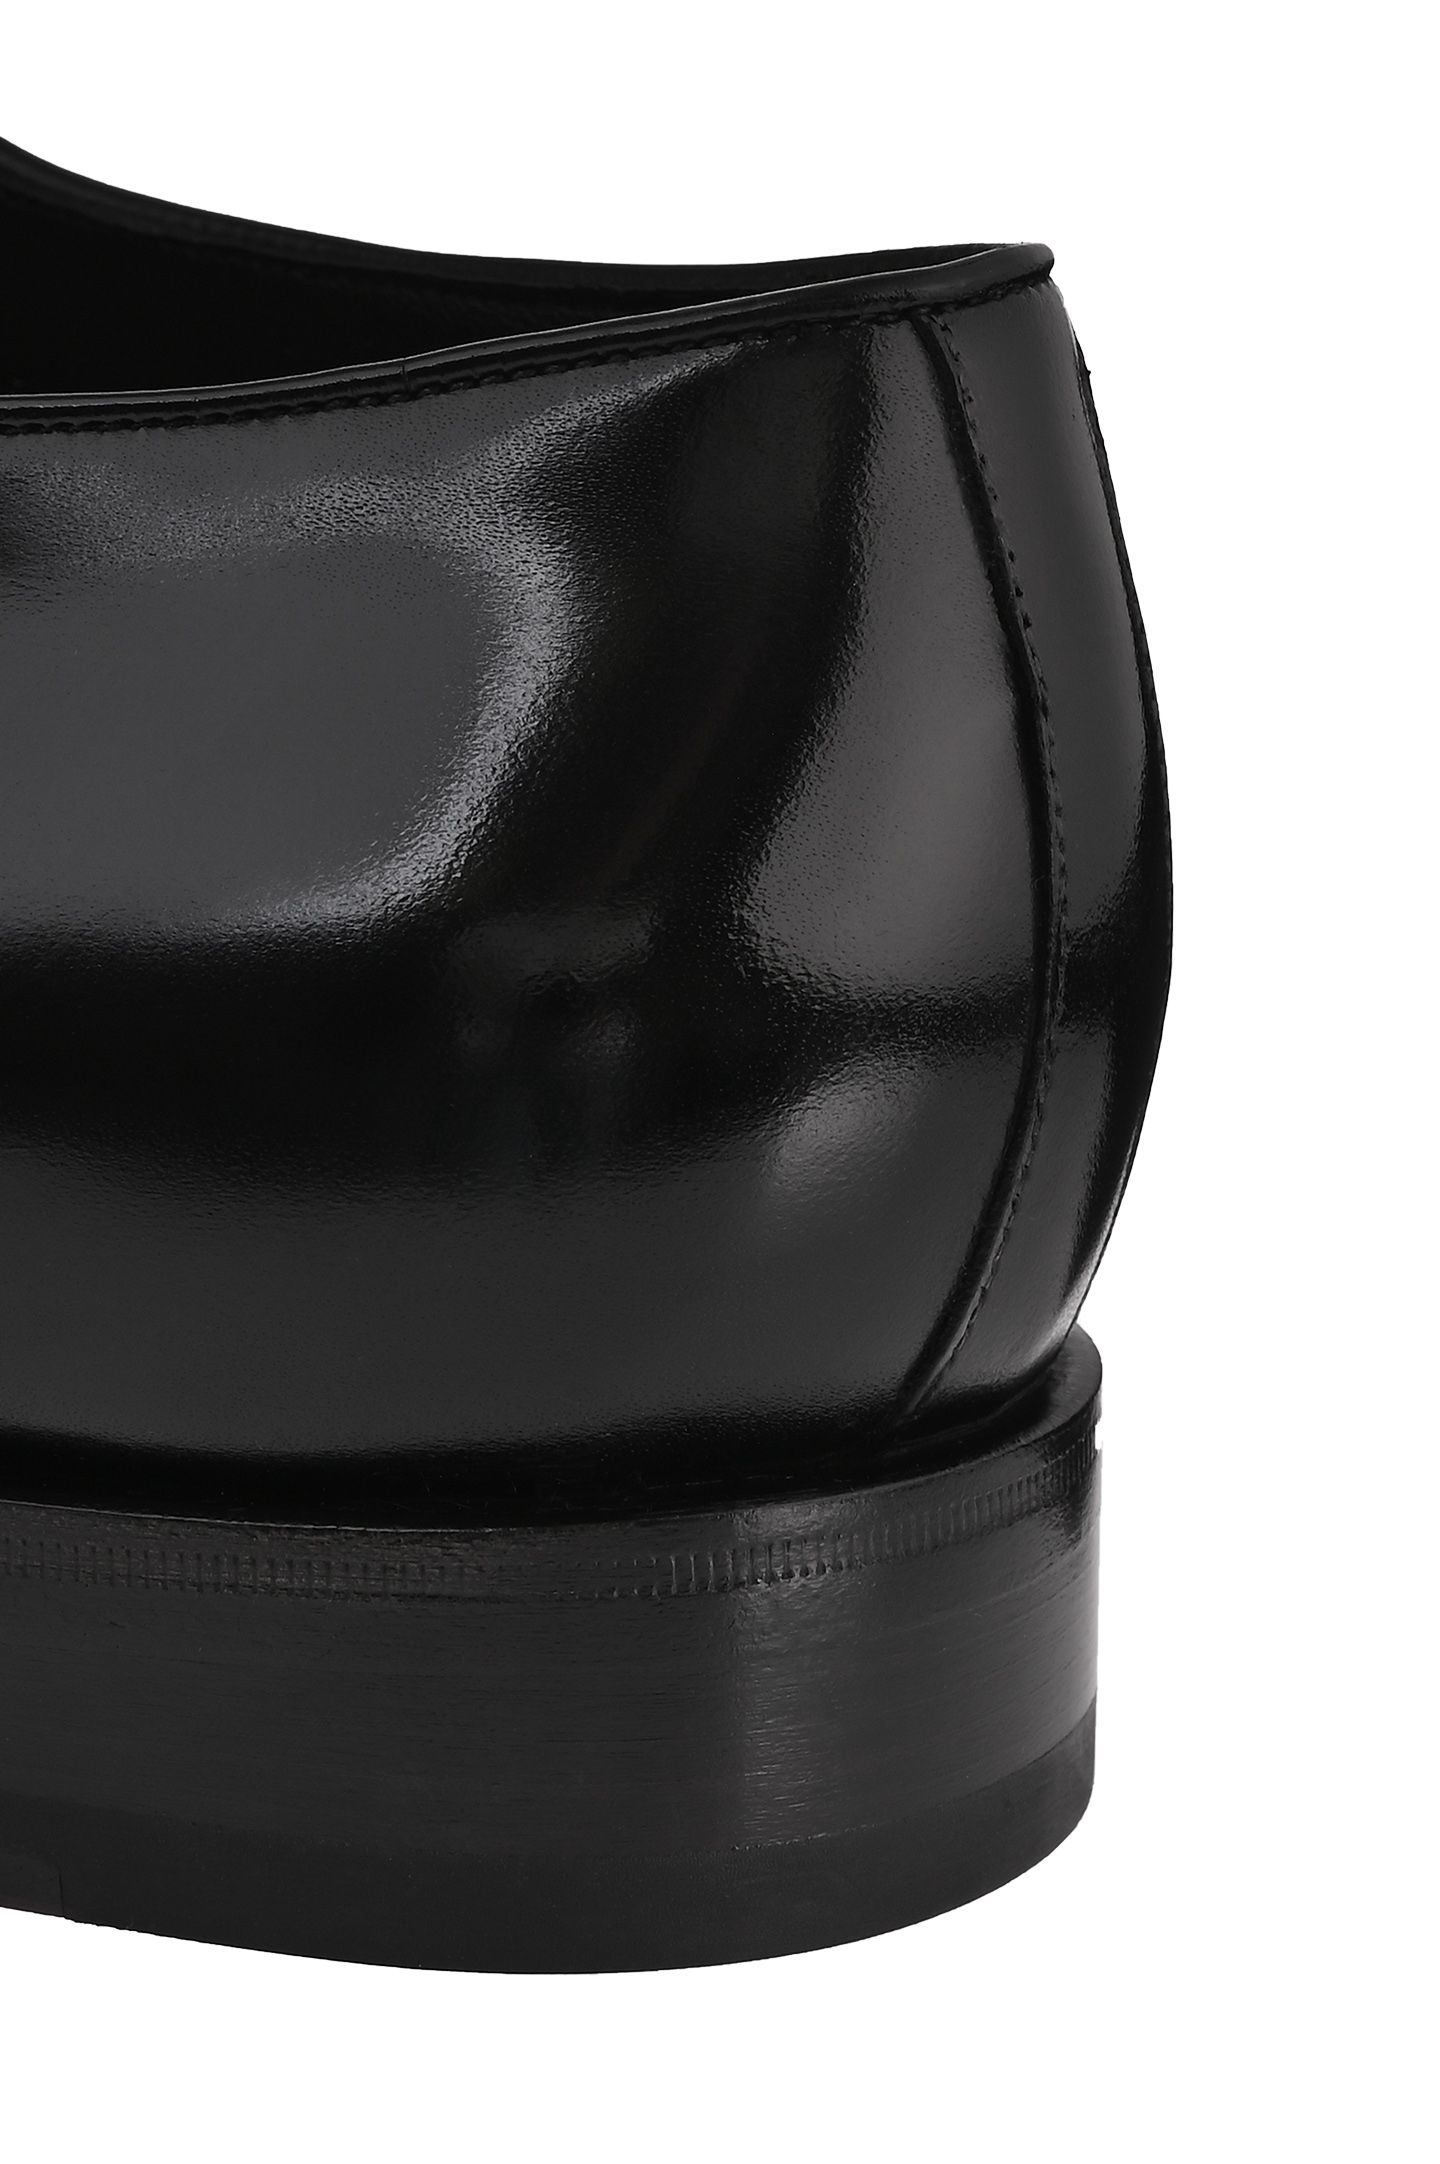 Кожаные дерби SANTONI MCJG18597PB1SNTUN01, цвет: Черный, Мужской